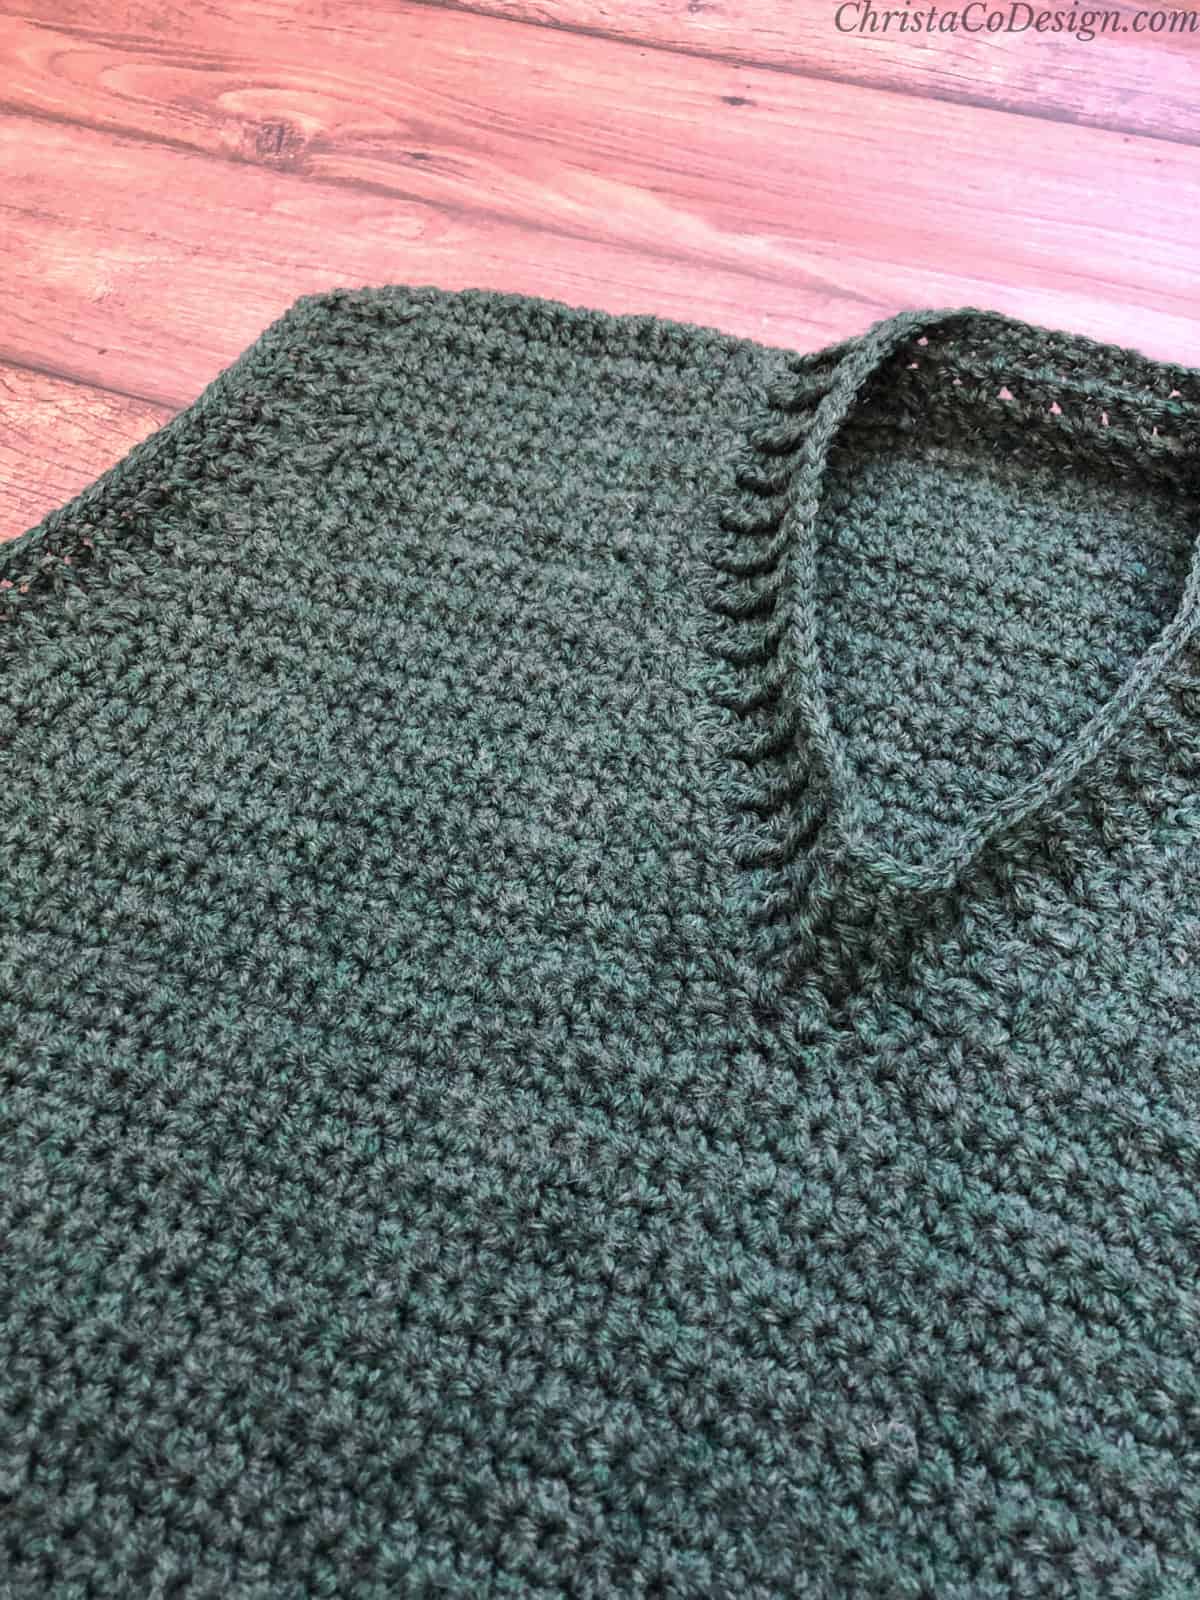 Neckline on men's crochet sweater vest in green on wood backdrop.